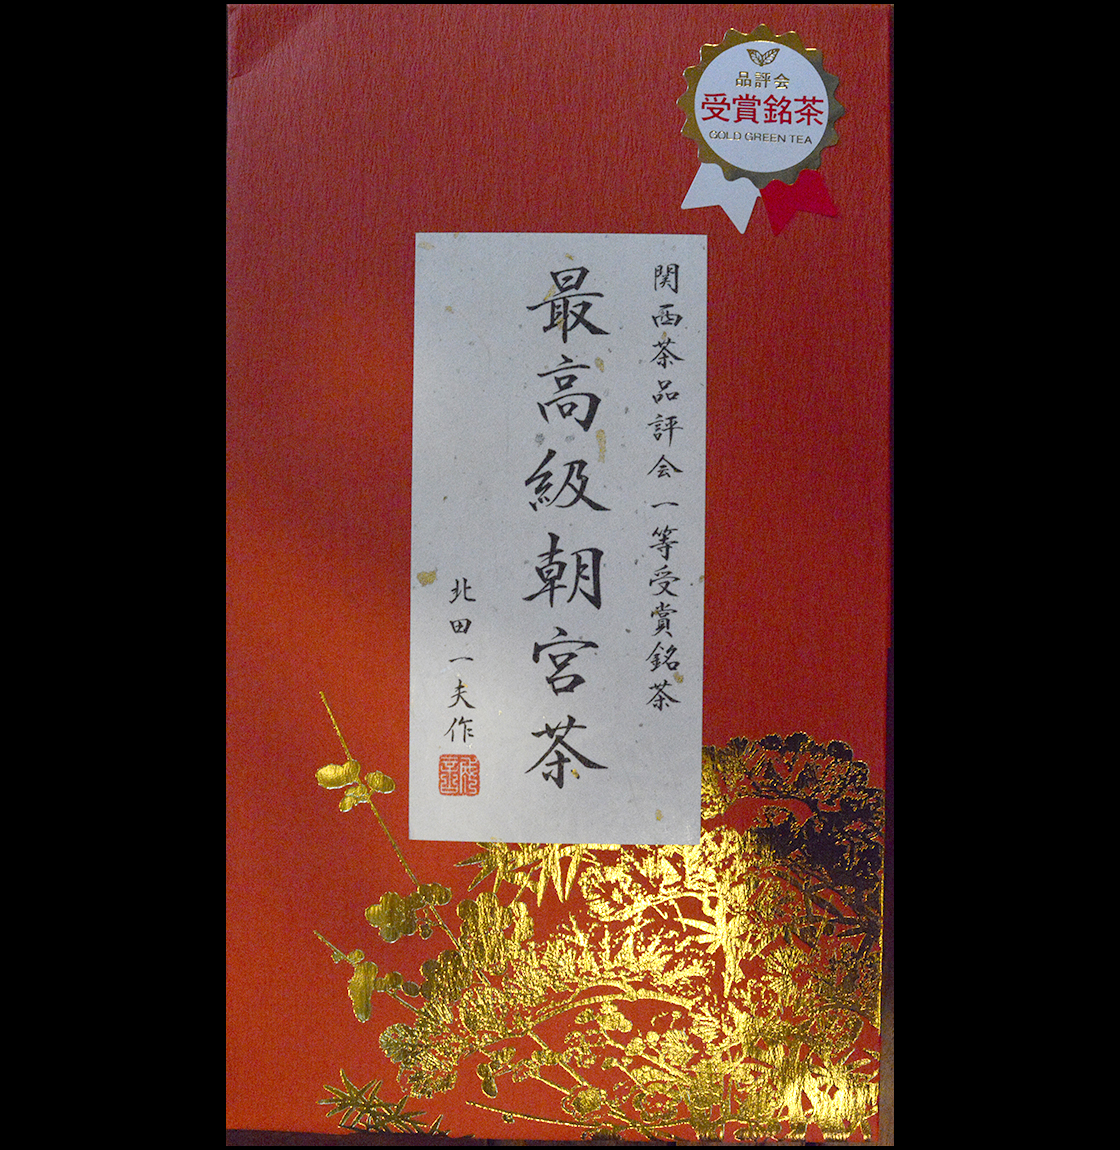 asamiya sencha tezumi nagydíjas top sencha japán tea